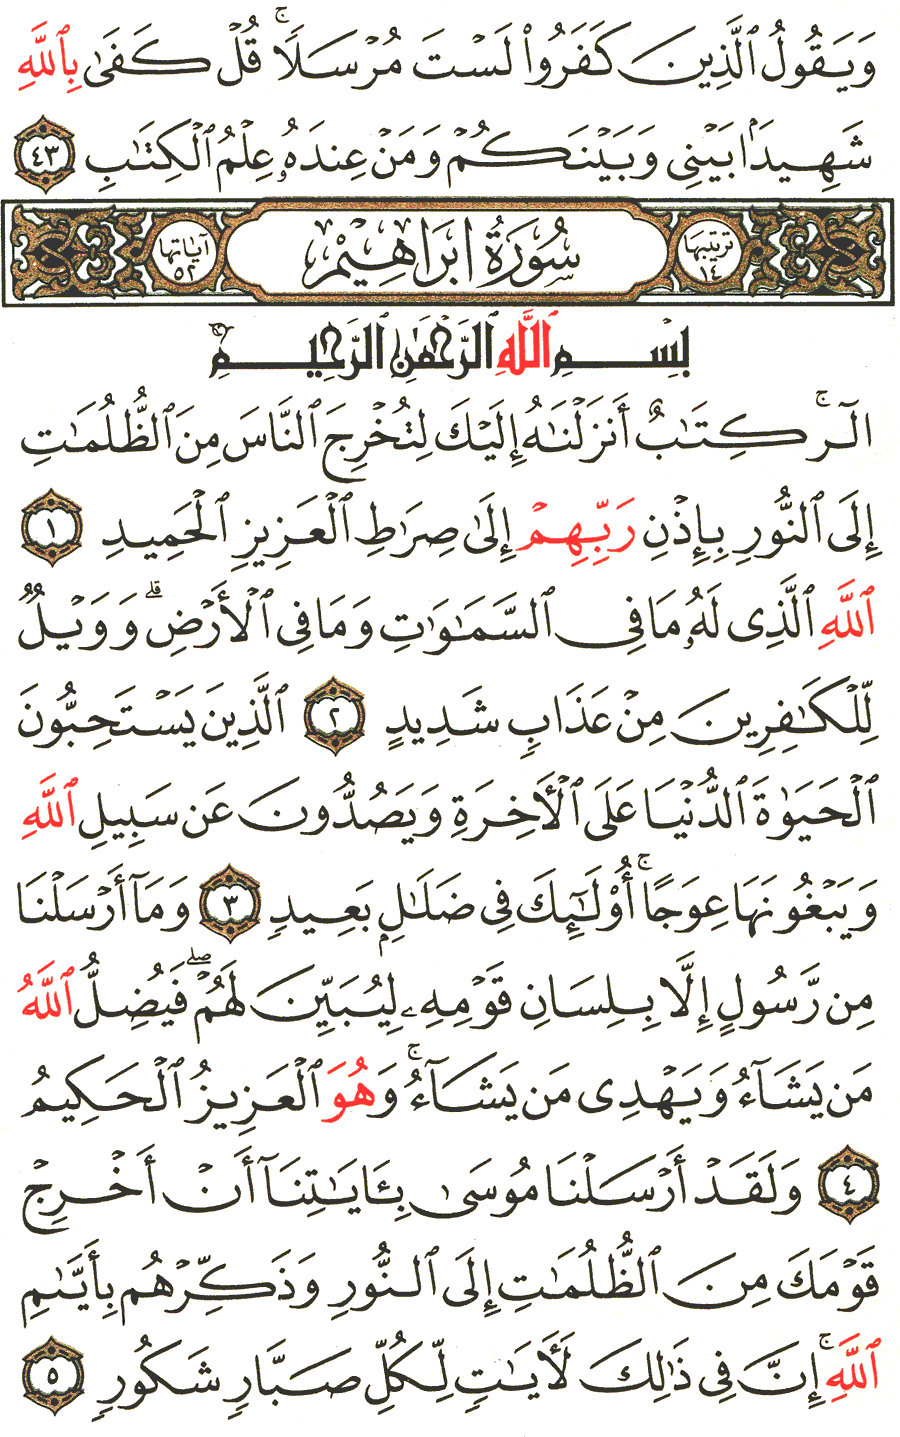 الصفحة رقم 255  من القرآن الكريم مكتوبة من المصحف